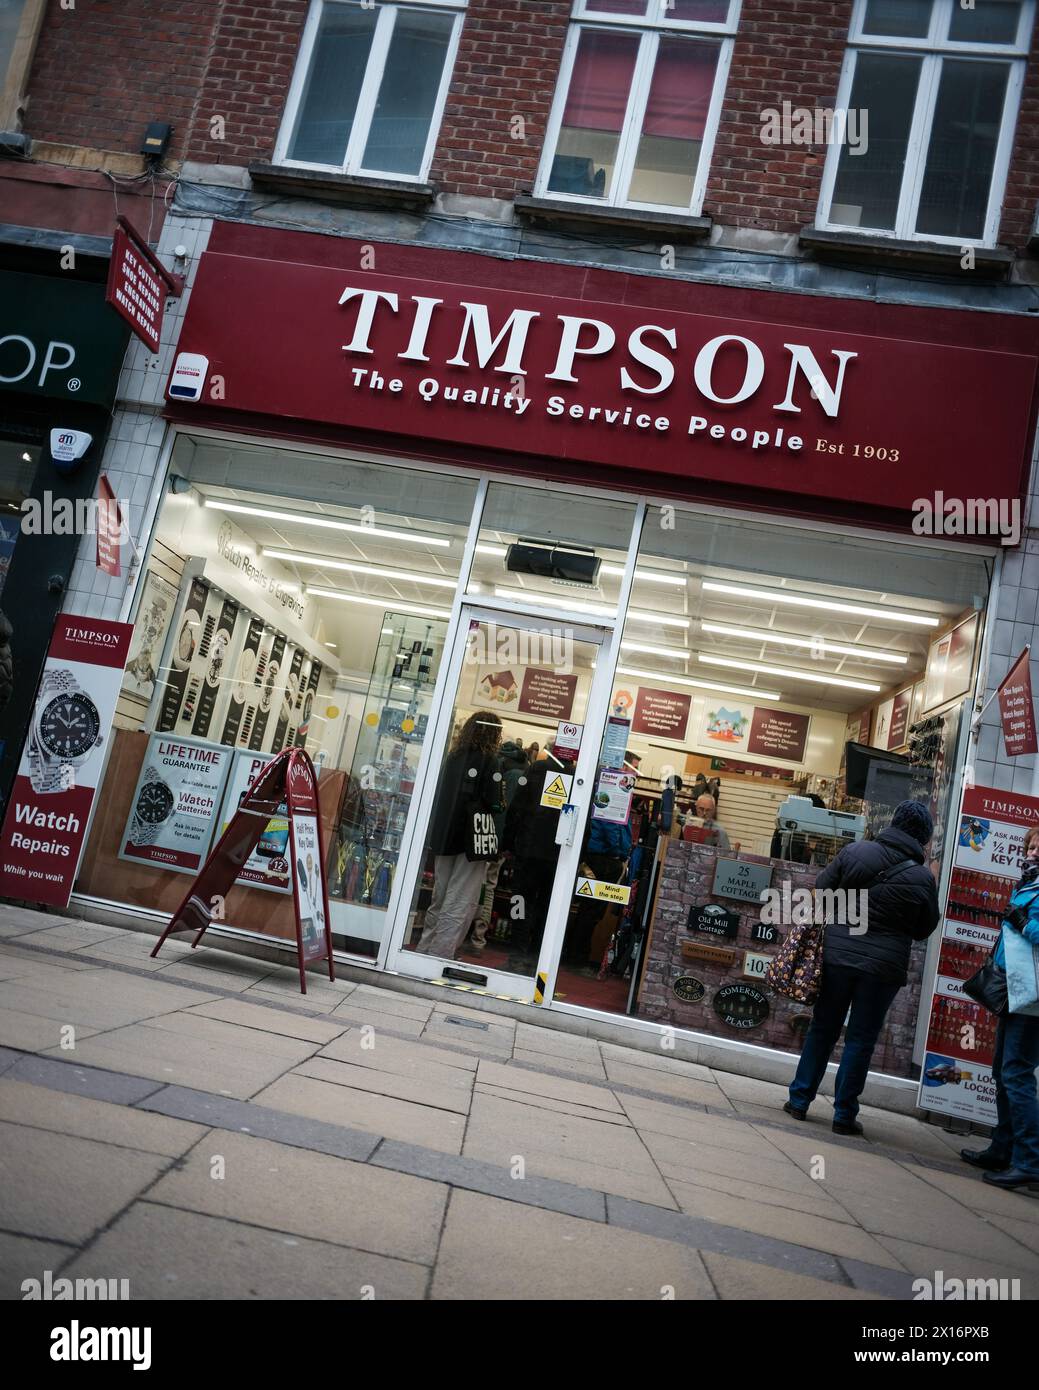 Avant du magasin Timpsons au Royaume-Uni Banque D'Images